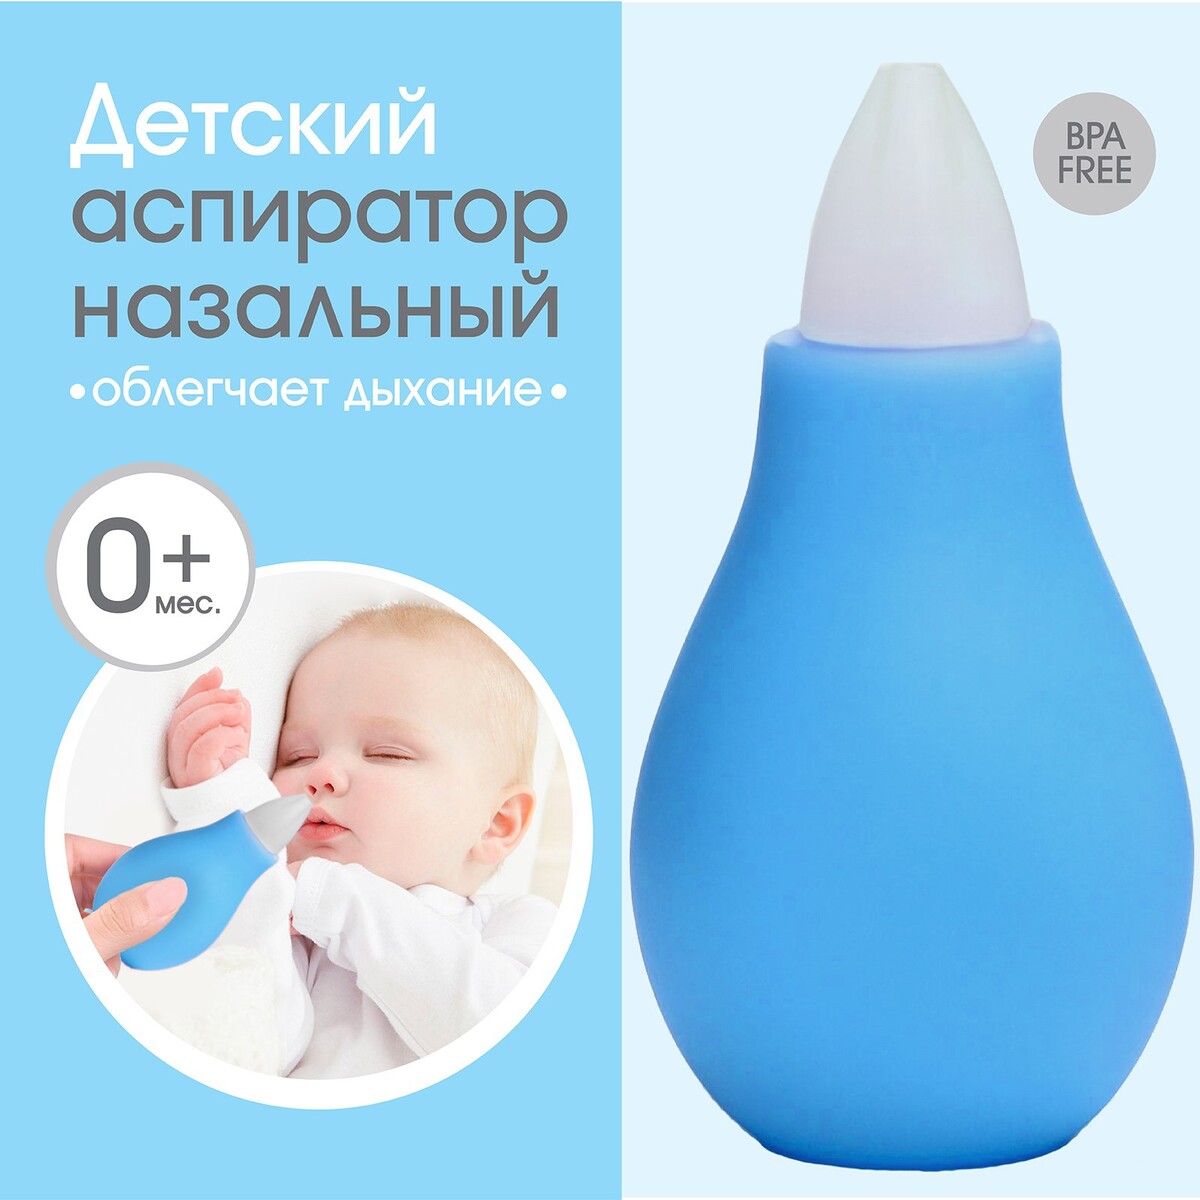 Детский назальный аспиратор, с колпачком, цвет голубой аспиратор baby vac назальный детский